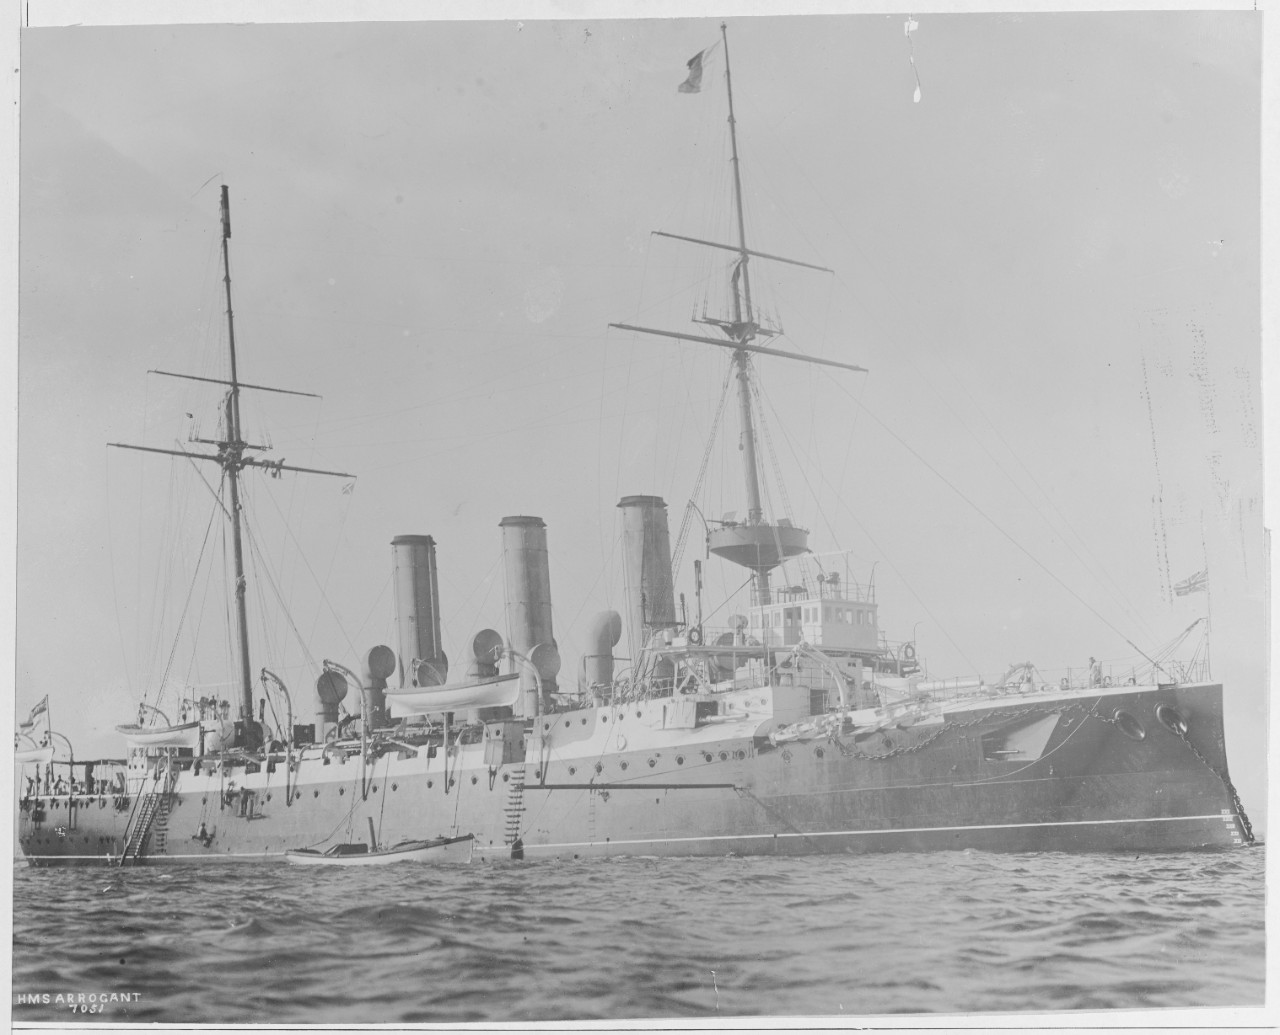 HMS ARROGANT British Cruiser, 1896